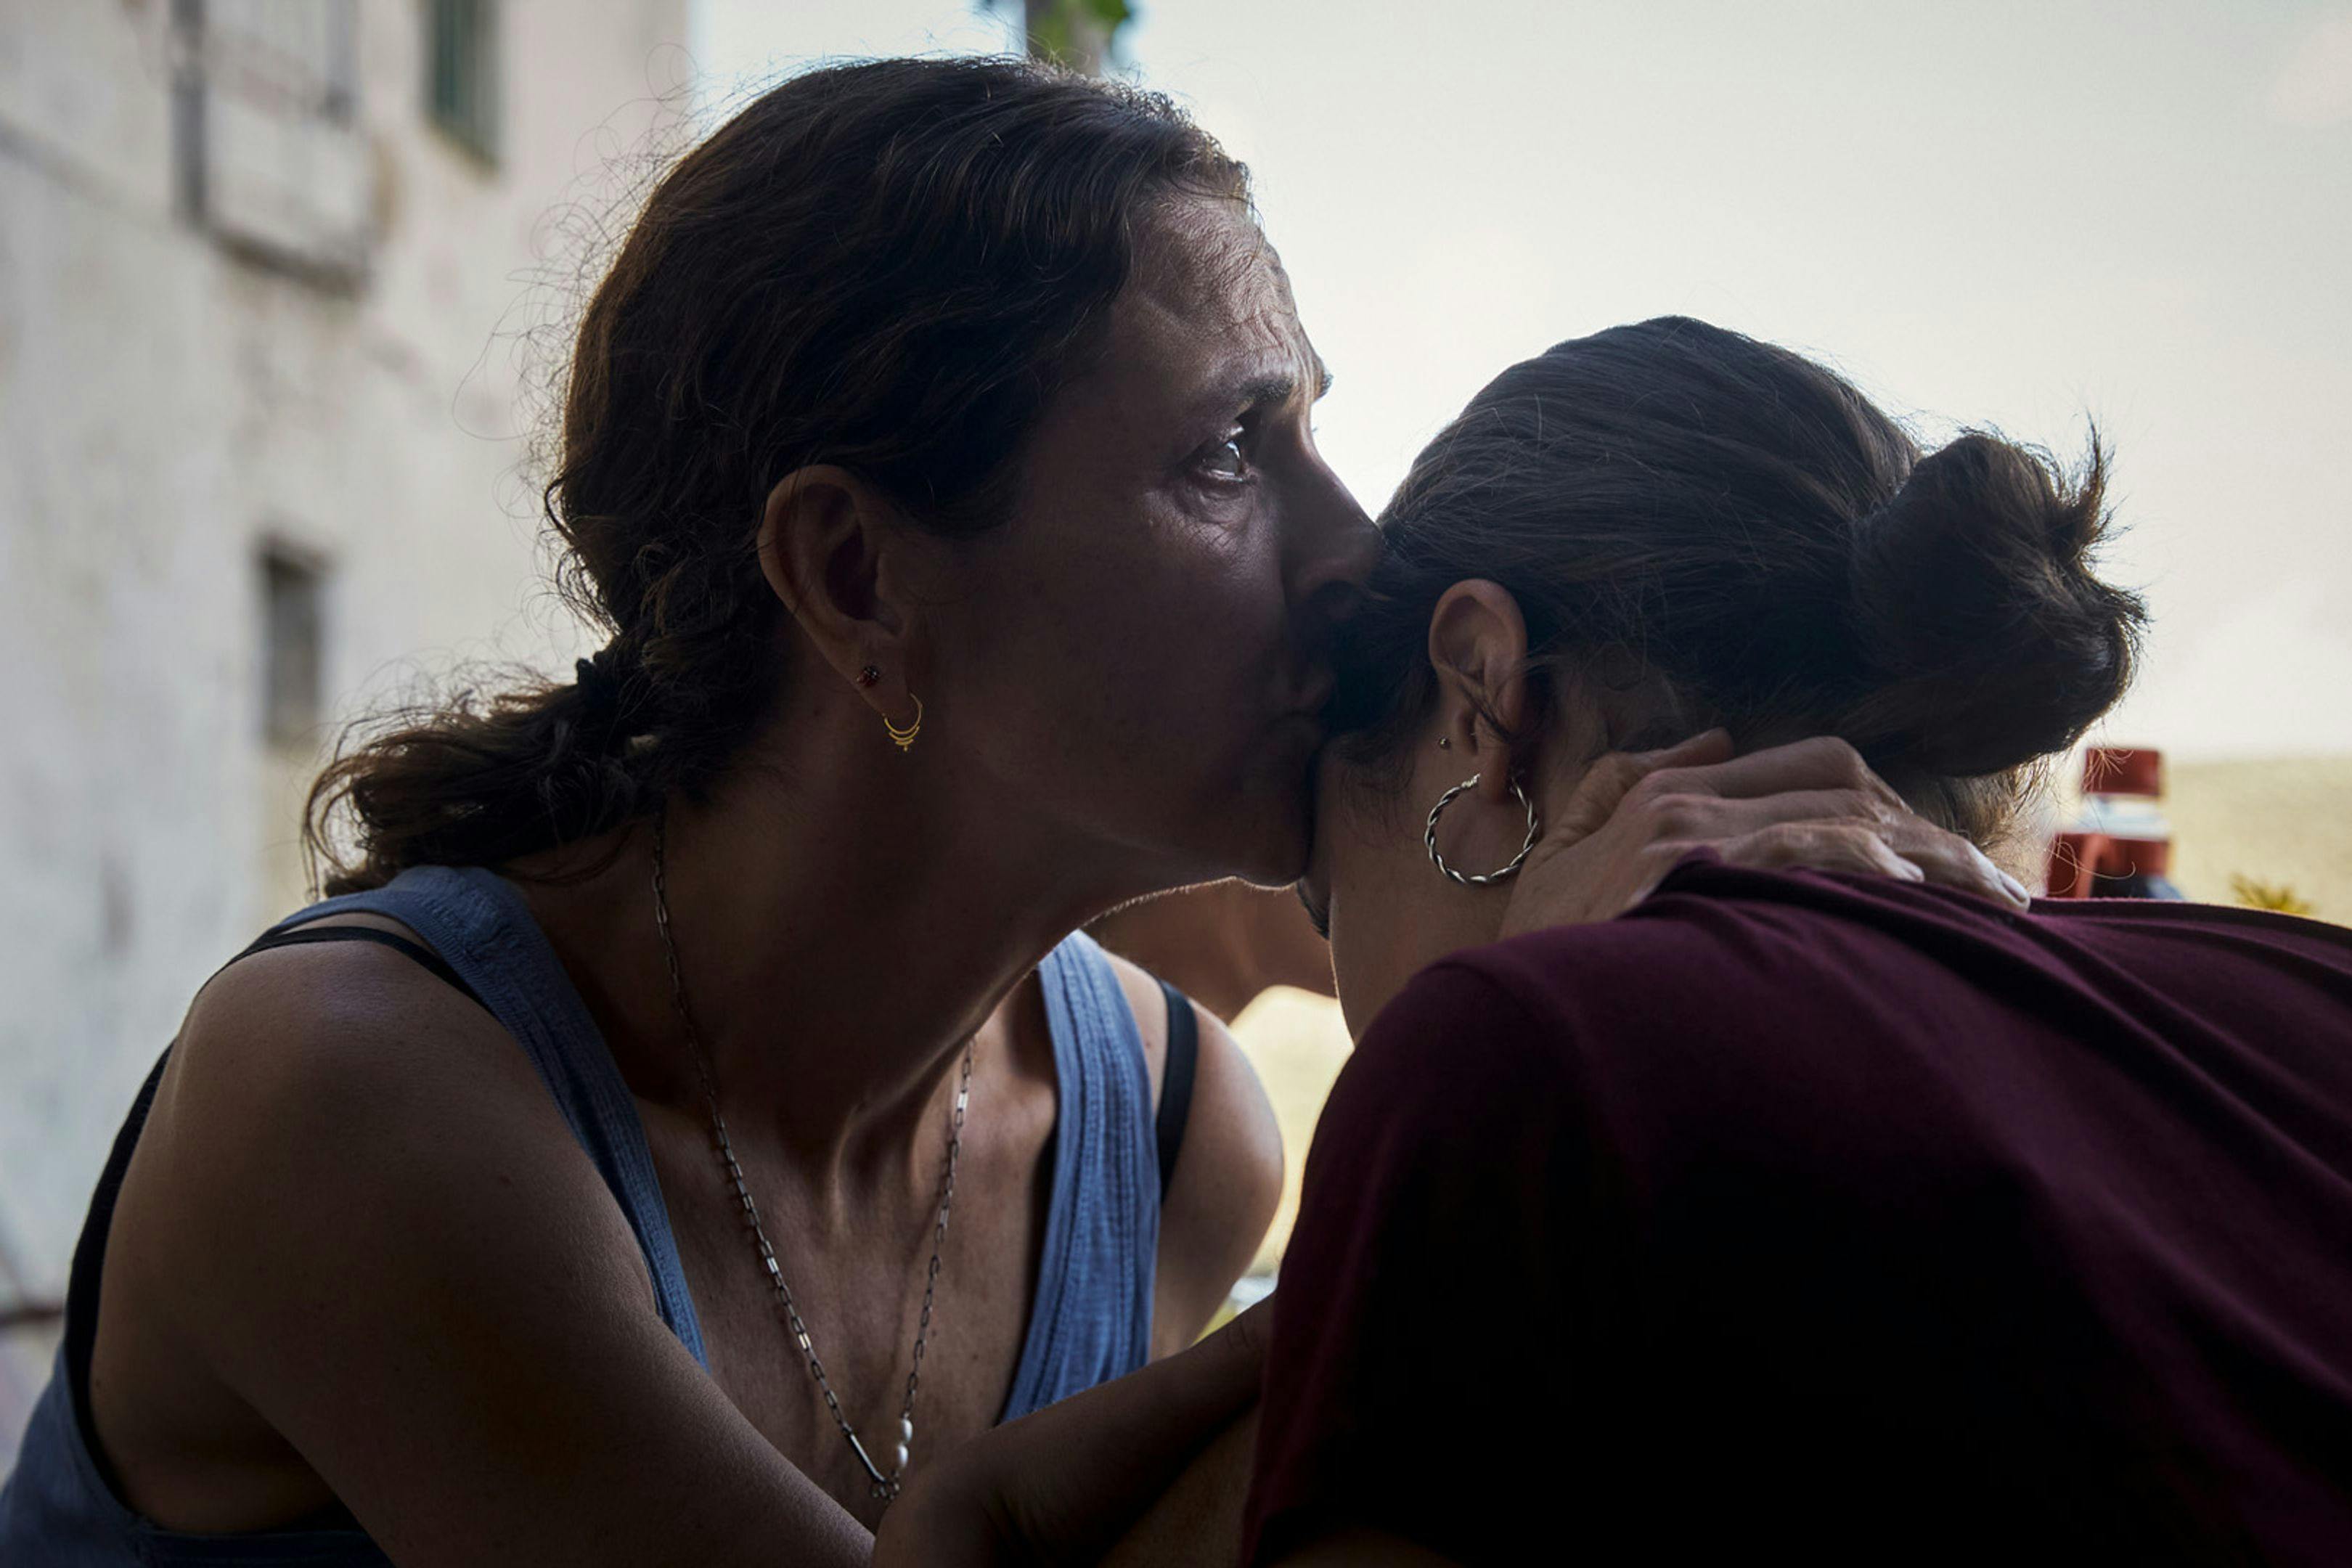 Fotograma promocional de 'Los tortuga', de Belén Funes, con Antonia Zegers besando a su hija en la ficción